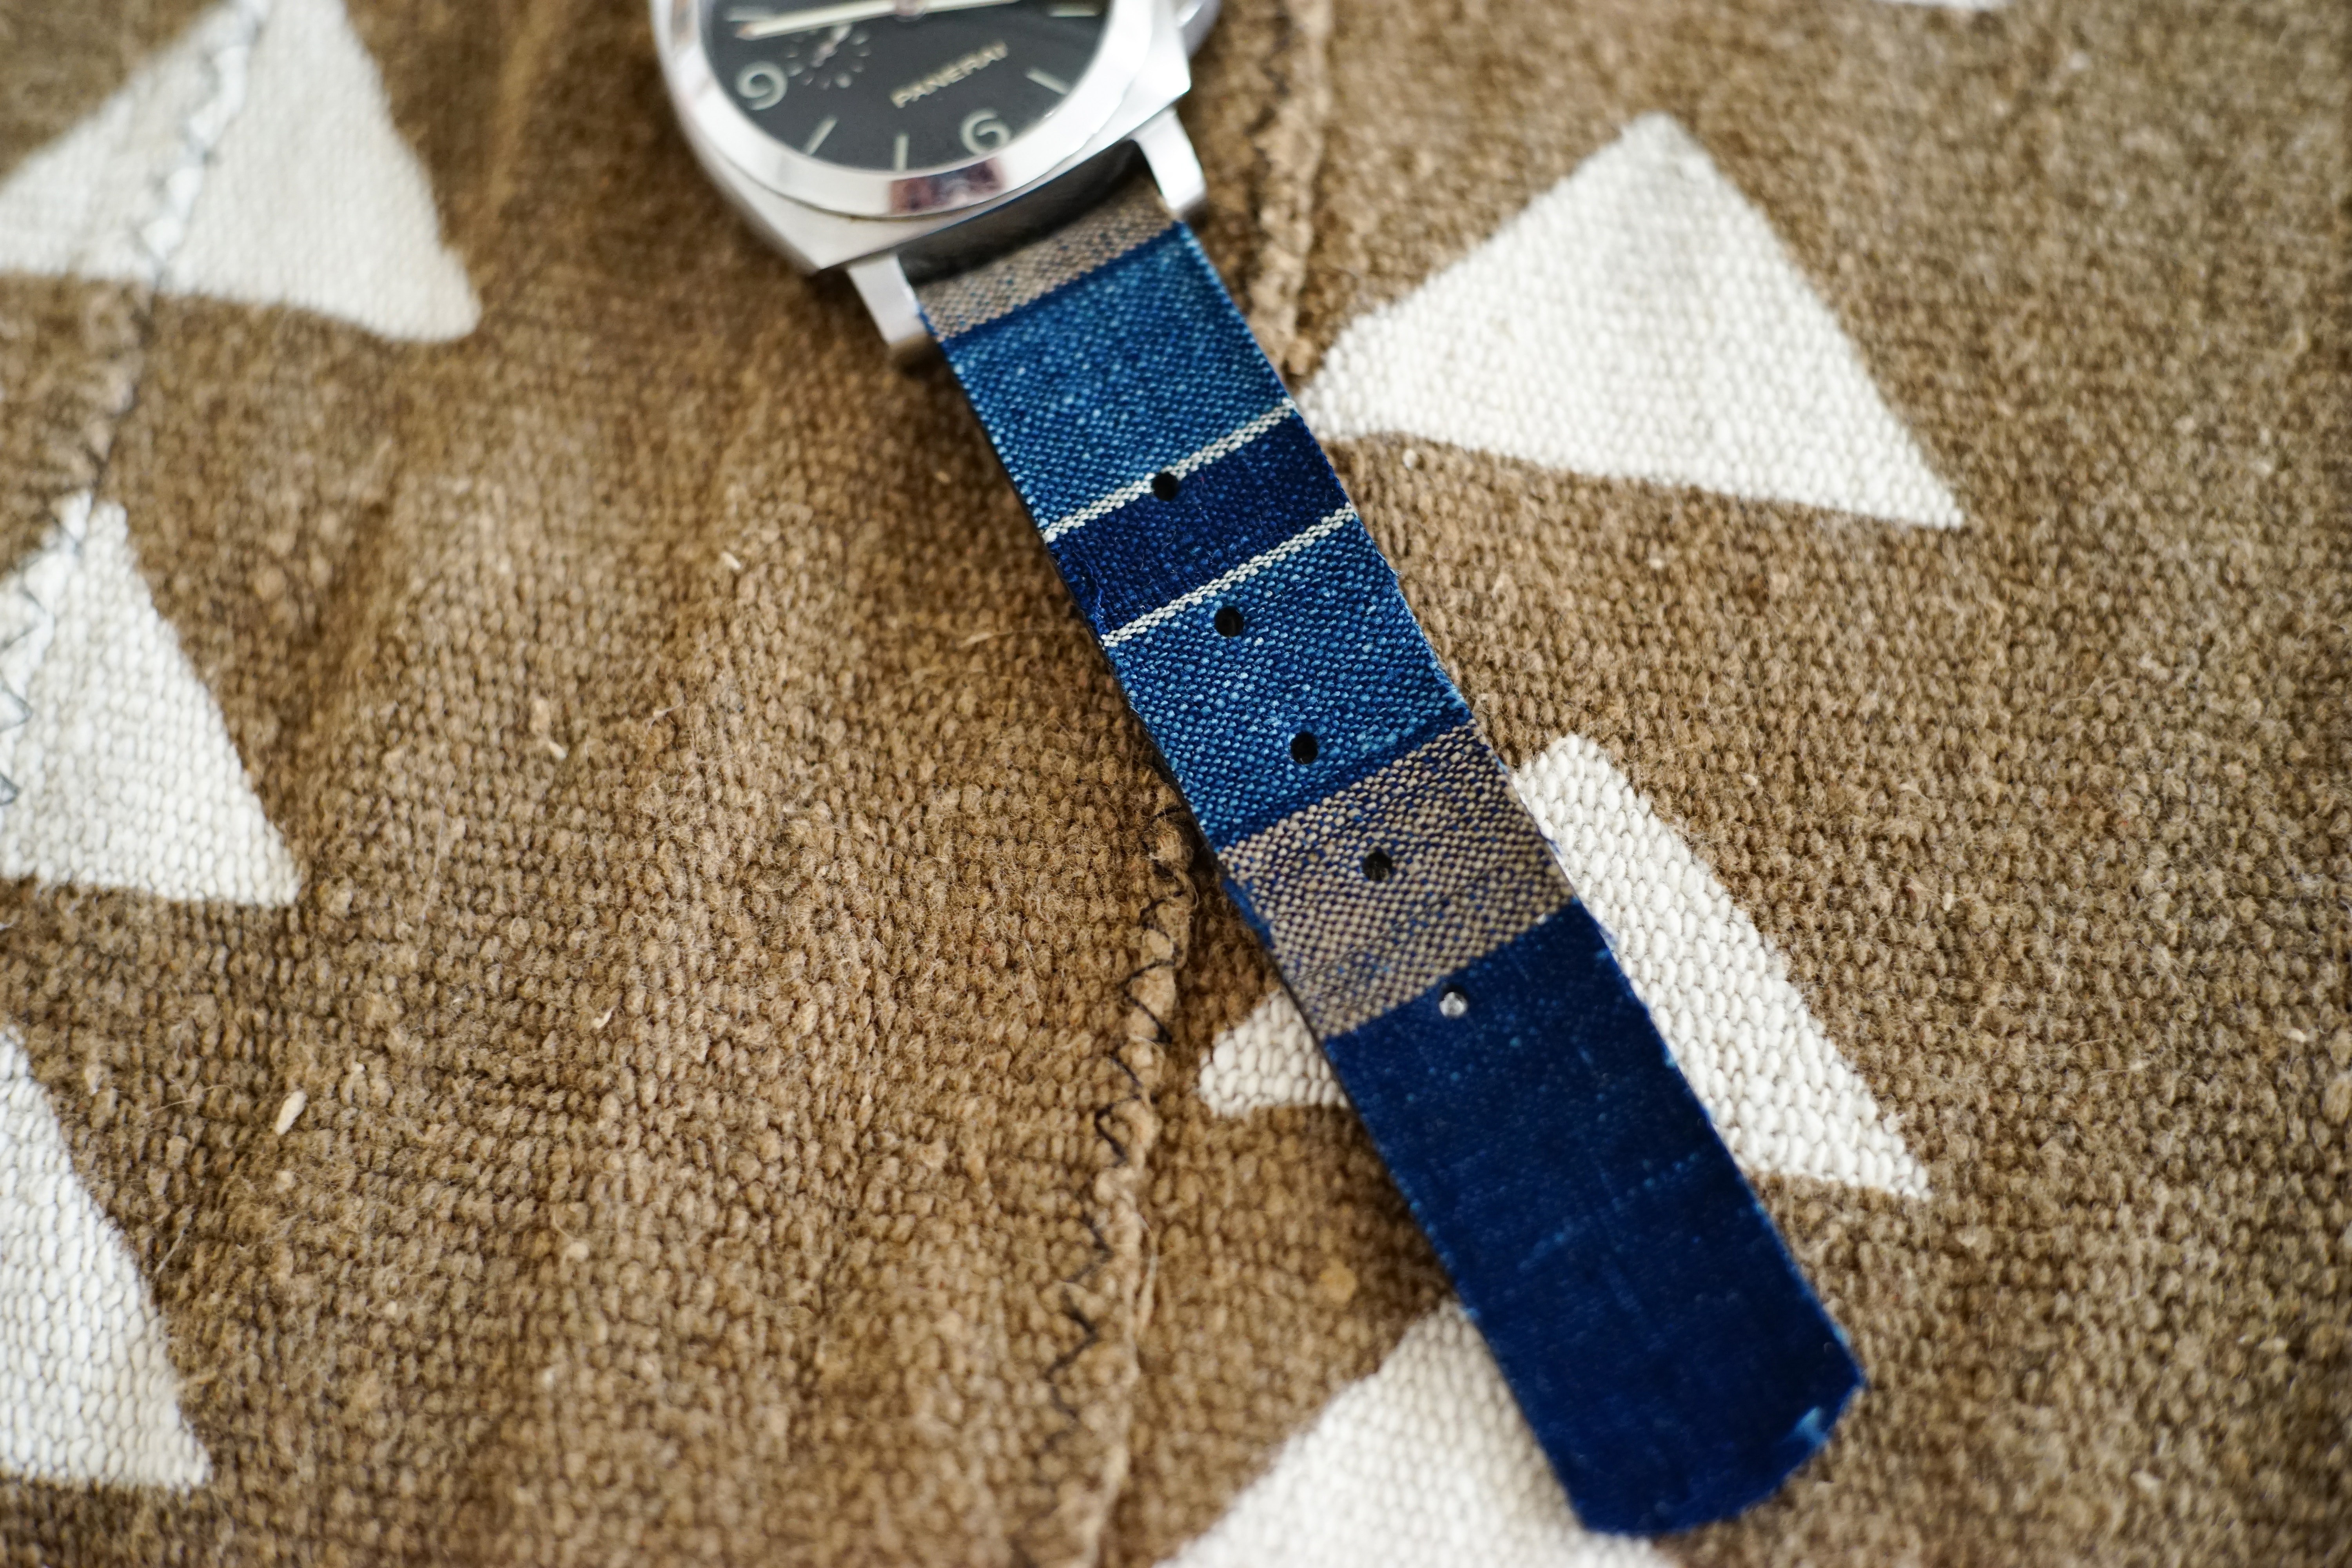 Simple Union 推出日本古布錶帶定製